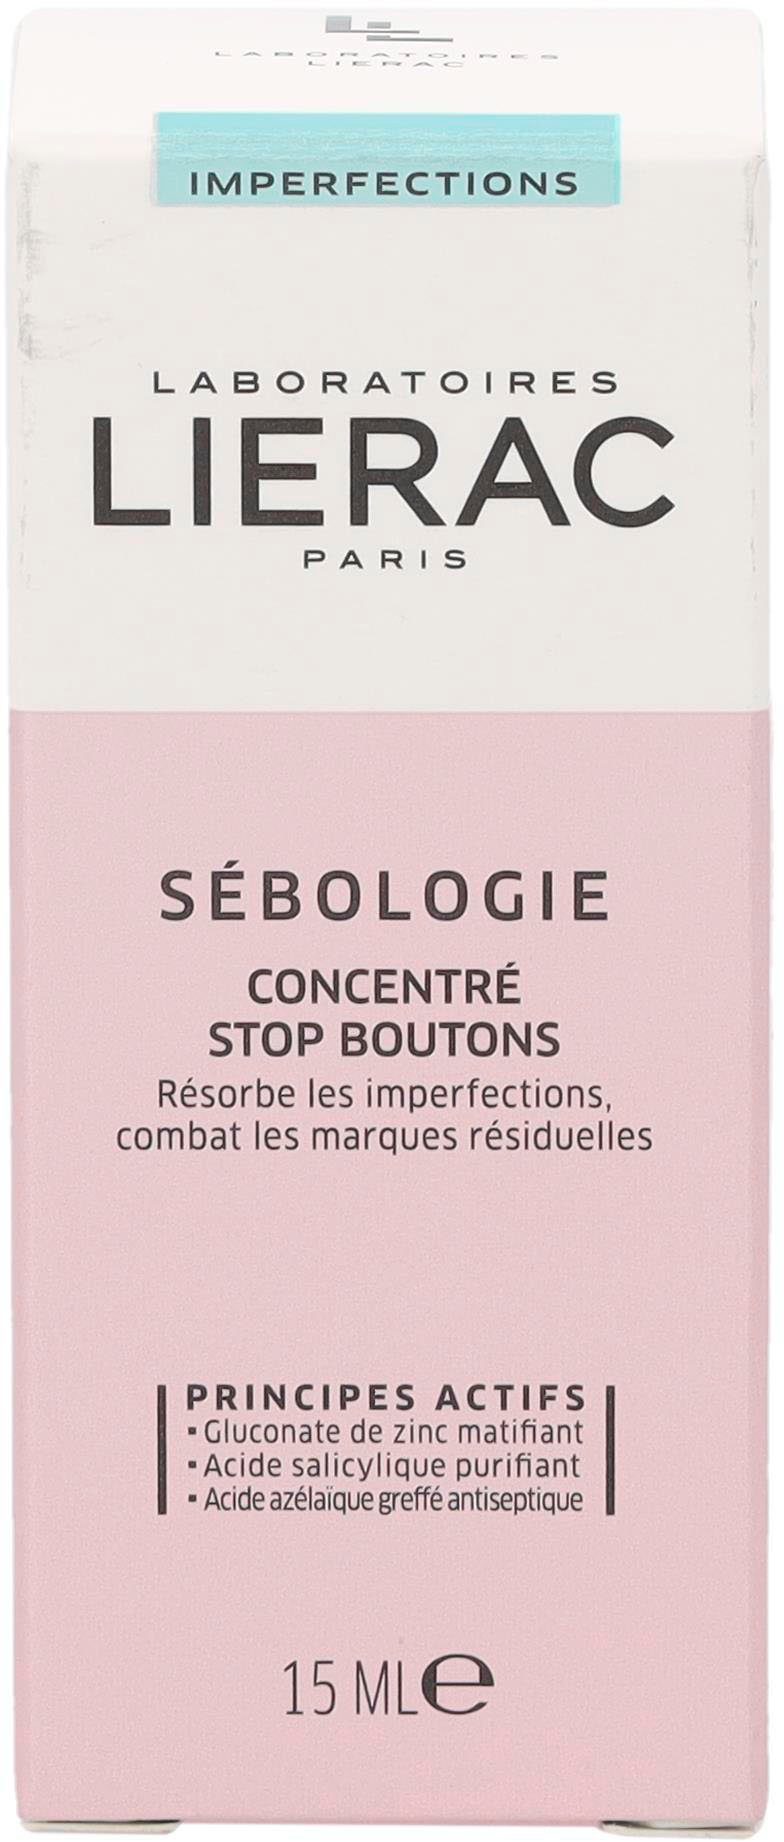 Stop Concentre Sebologie LIERAC Boutons, Gesichtspflege bekämpft Pickel